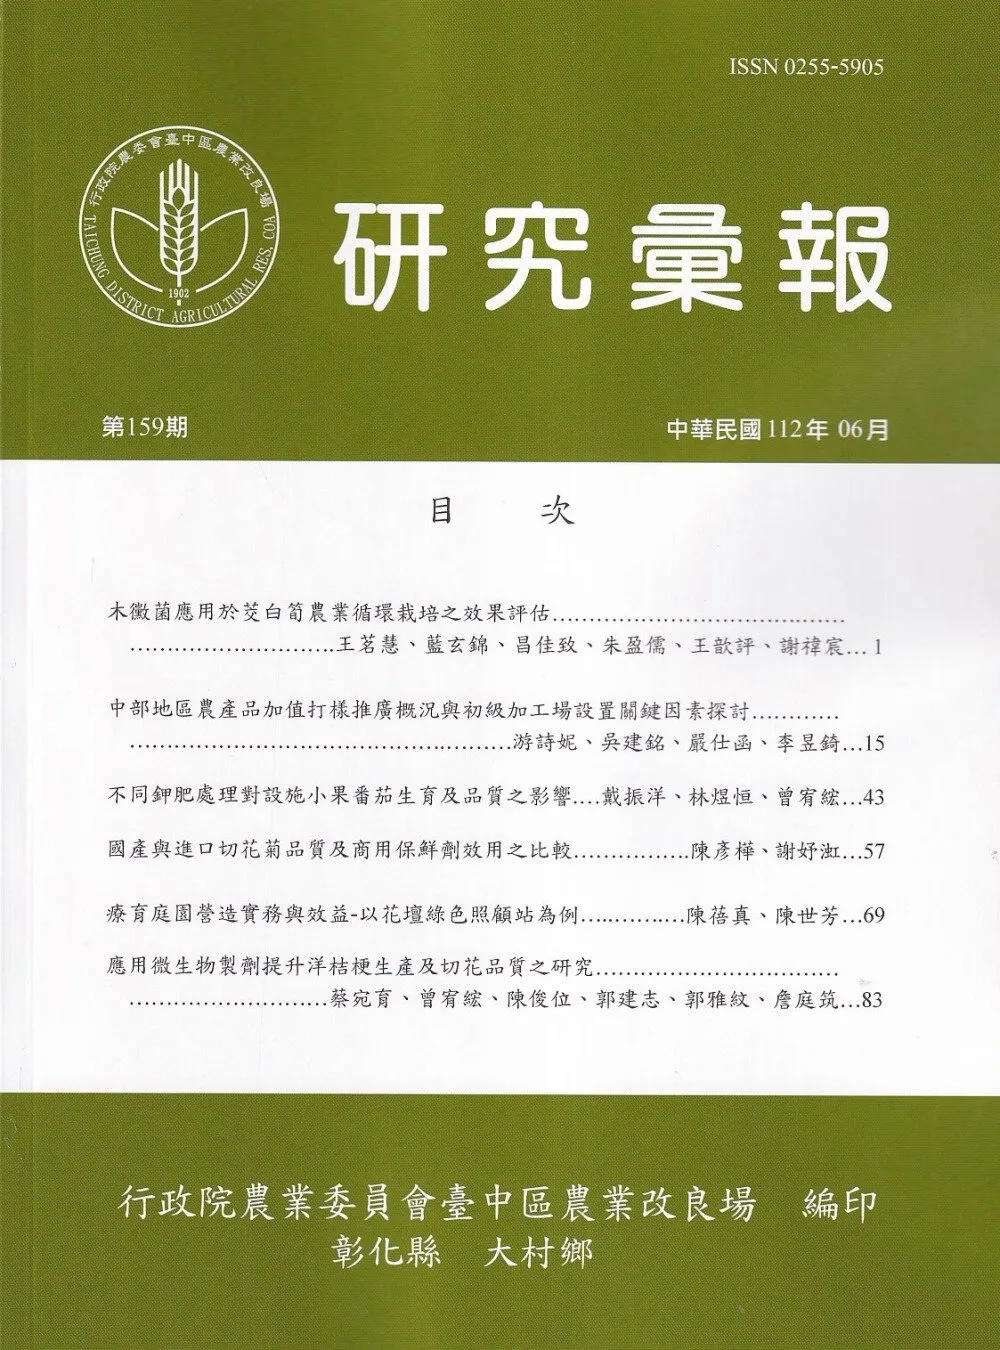 研究彙報159期(112/06)行政院農業委員會臺中區農業改良場